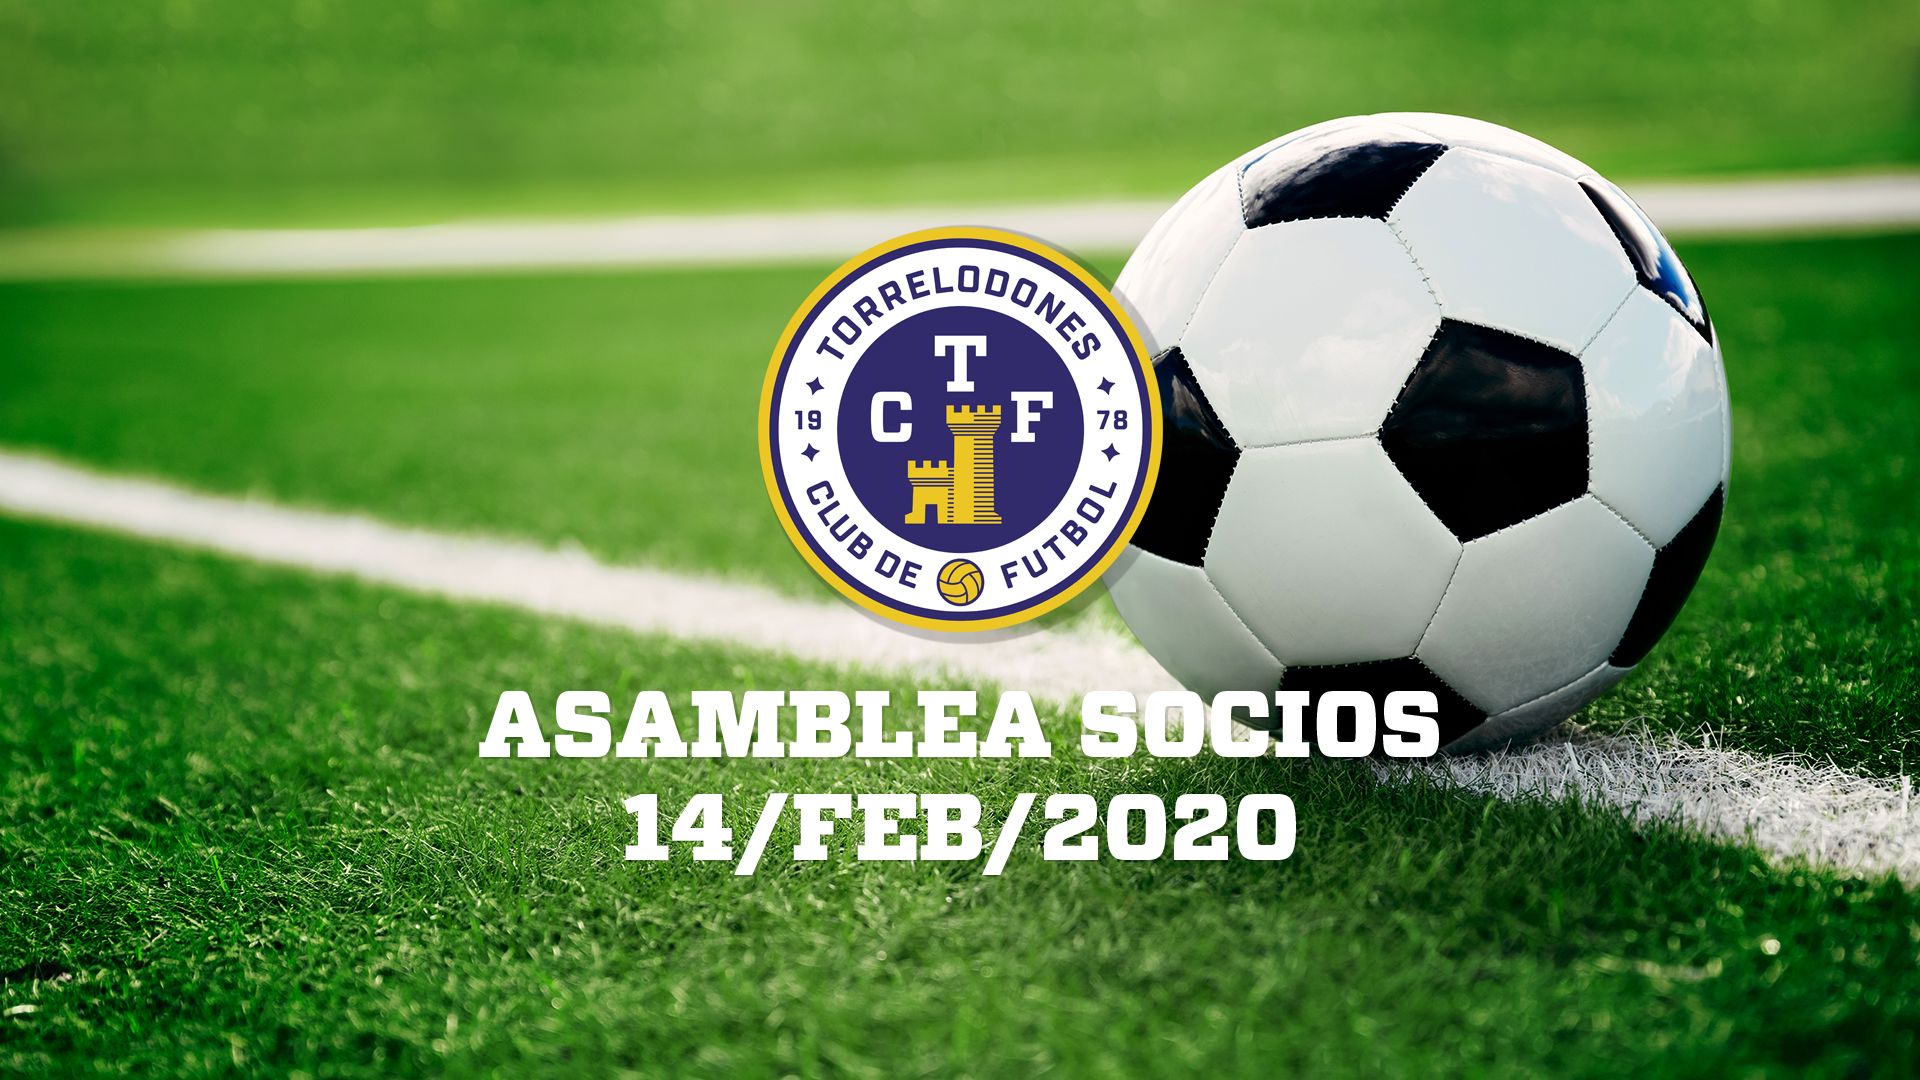 Asamblea_2019